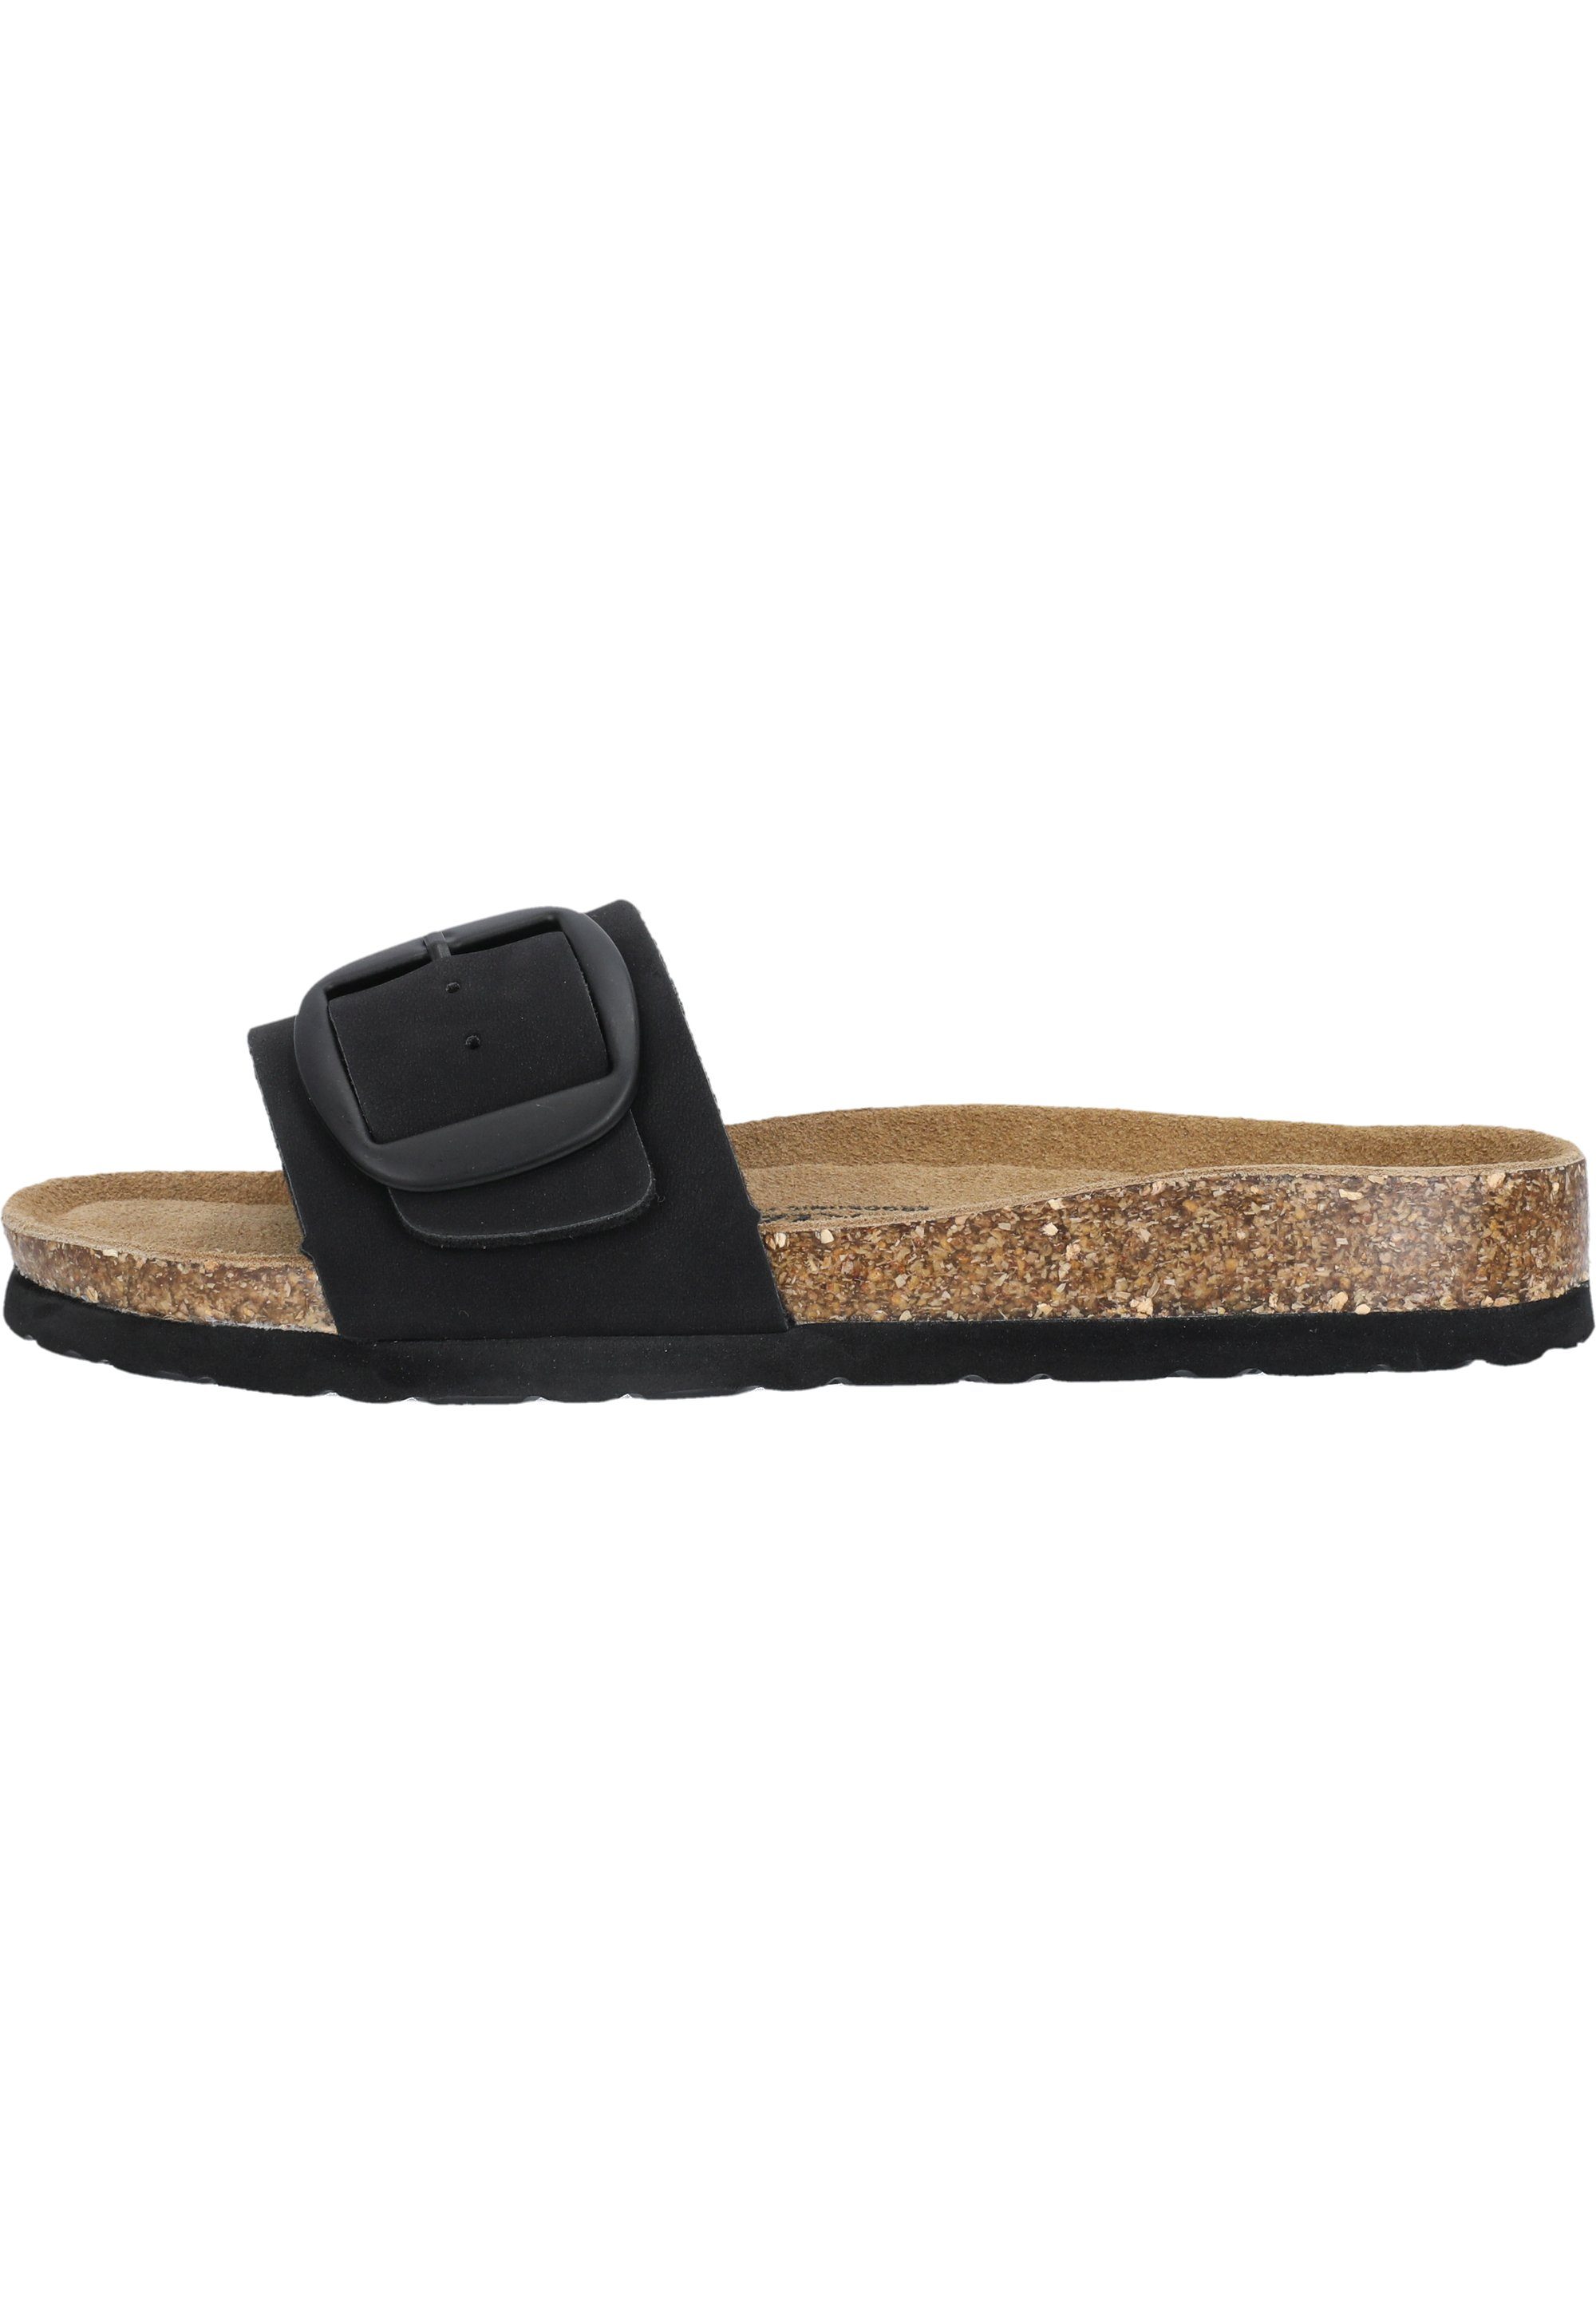 Sandale mit Ferse CRUZ Dreya schwarz gepolsterter